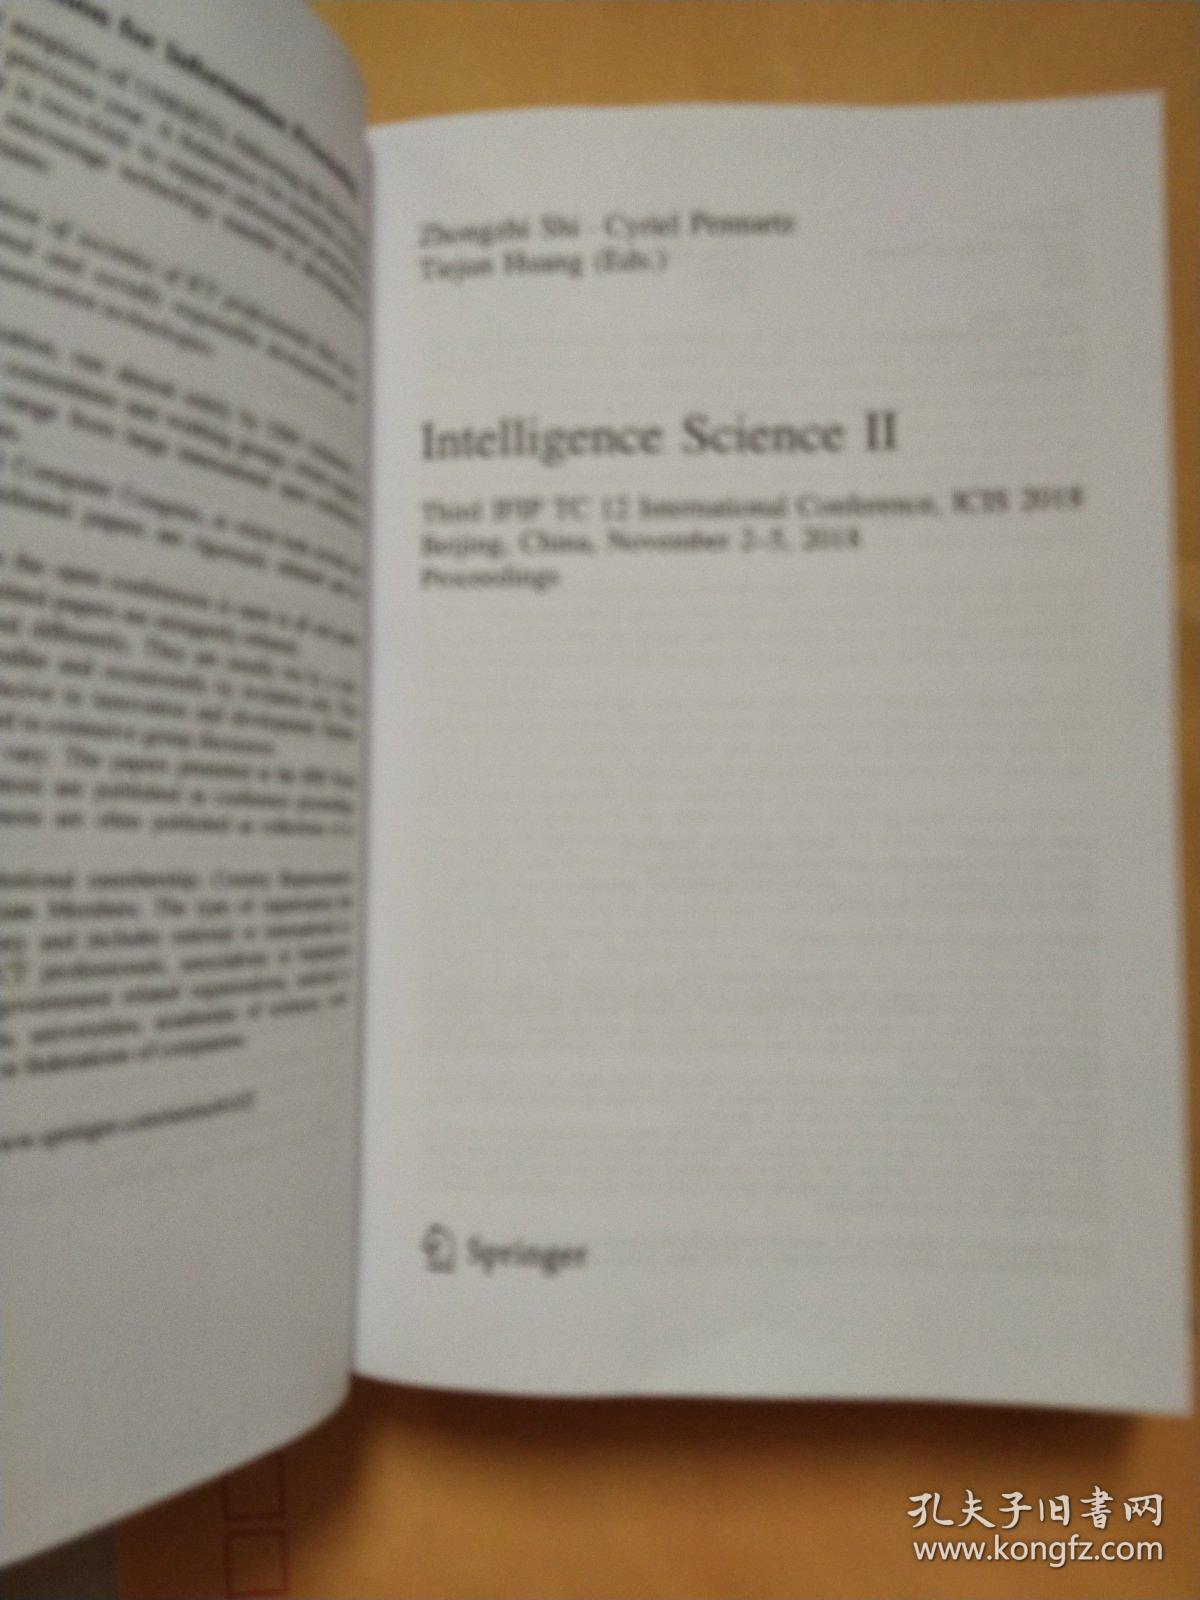 lntelligence Science II